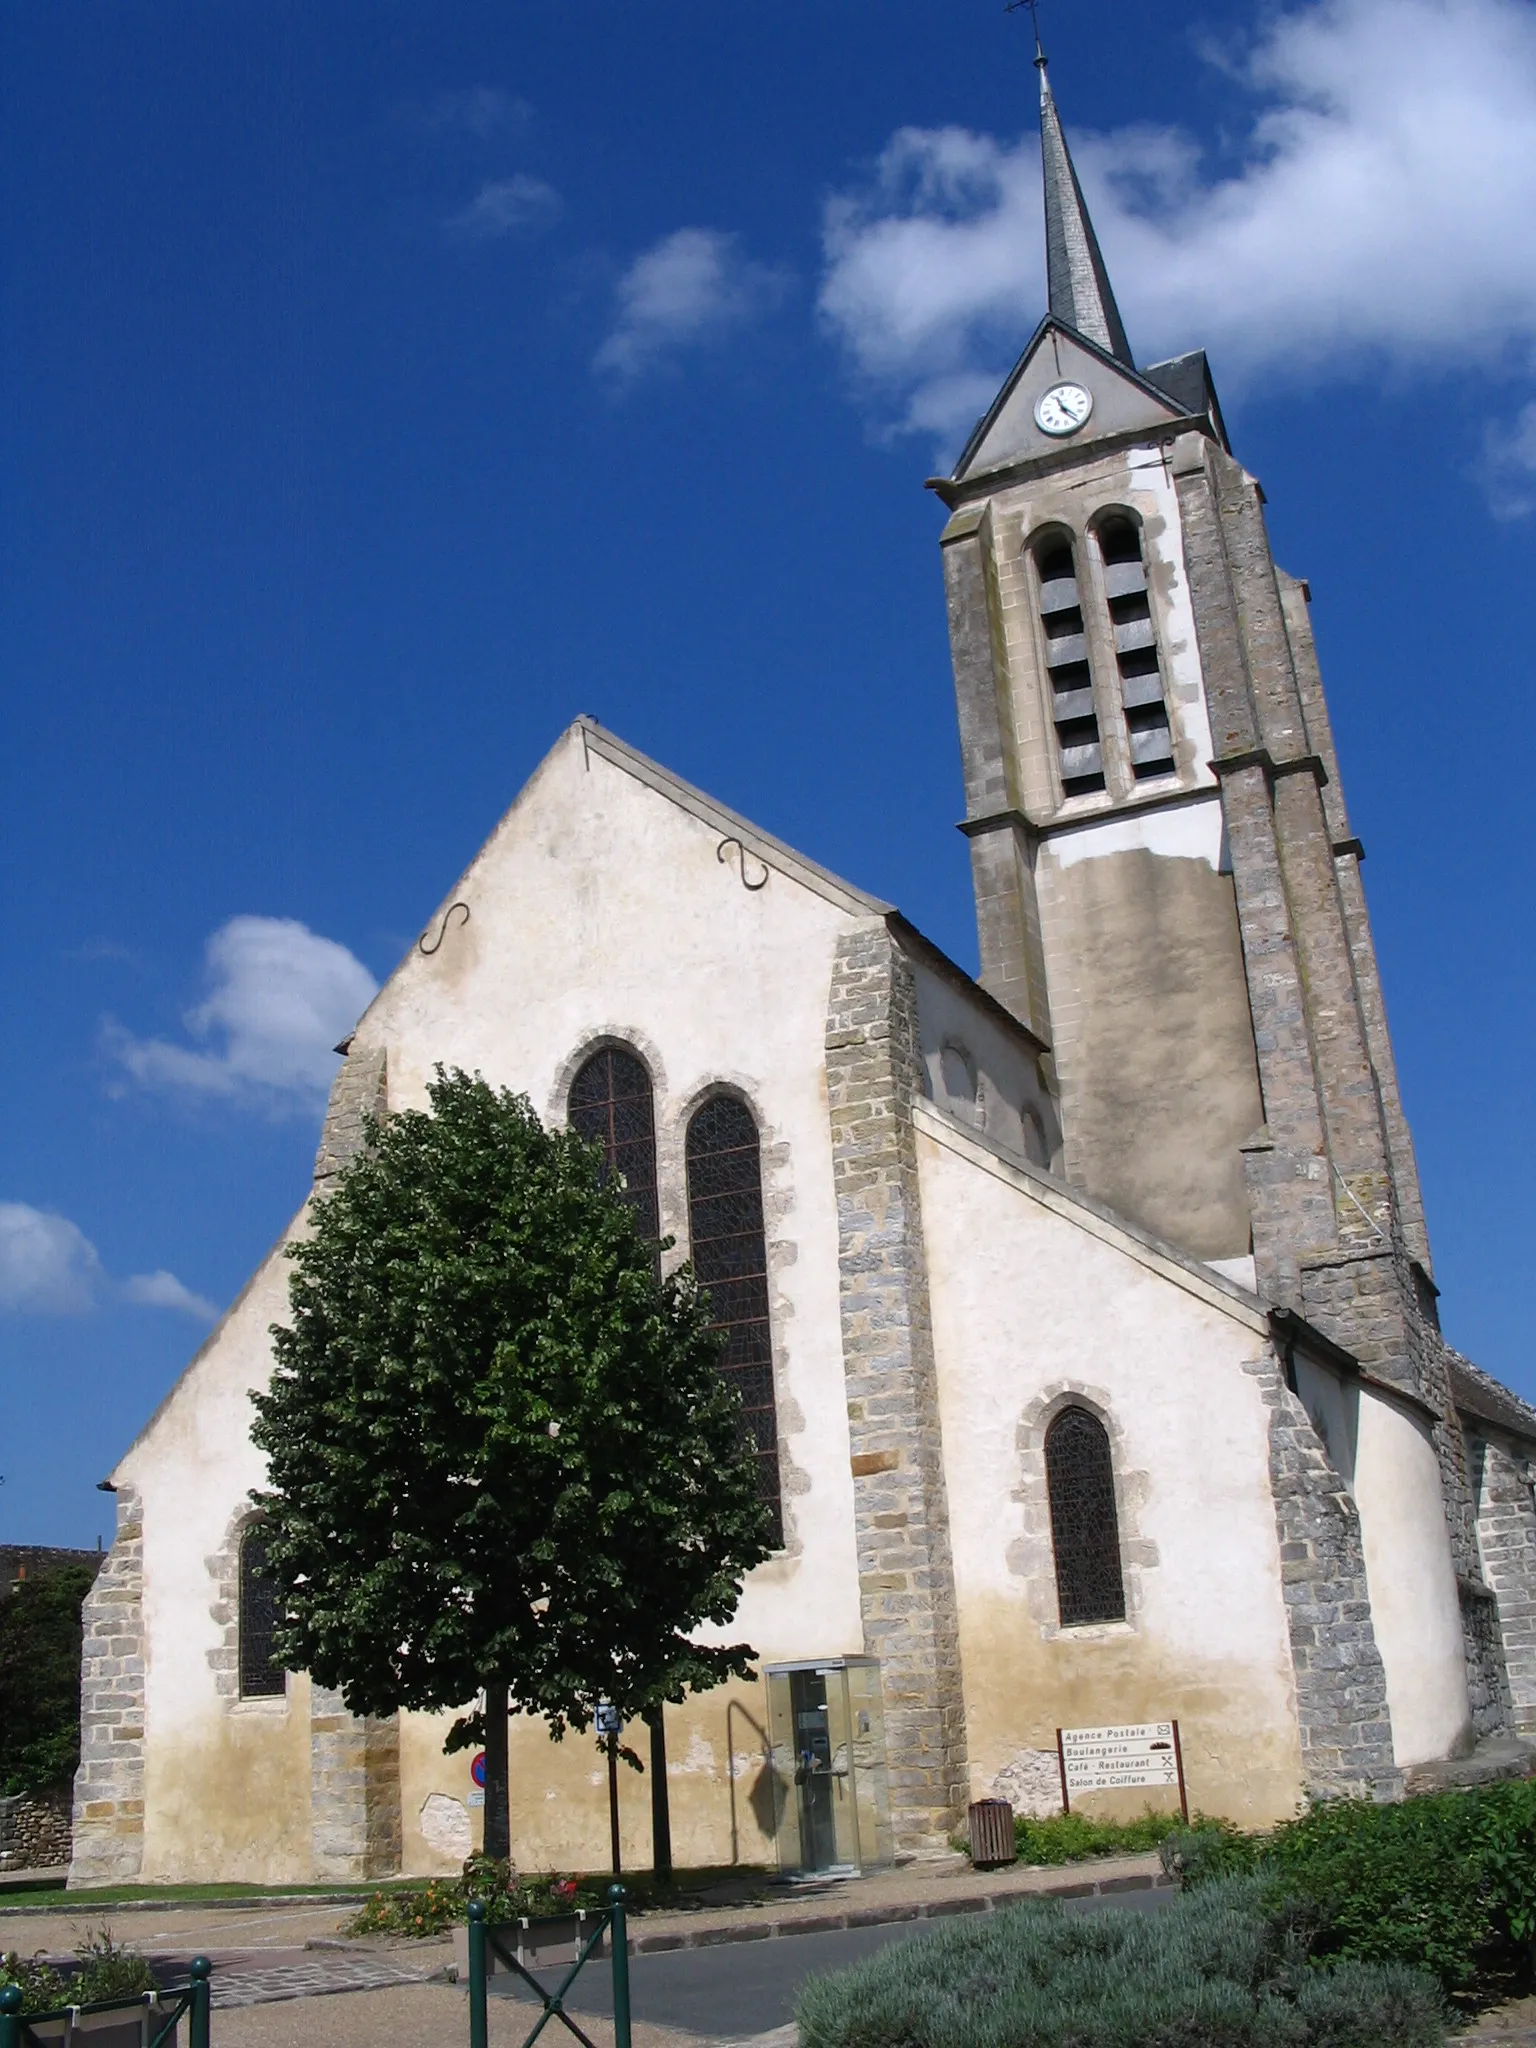 Photo showing: The Saint-Fortuné church of Vernou-sur-Seine, in Vernou-la-Celle-sur-Seine, Seine-et-Marne, France.